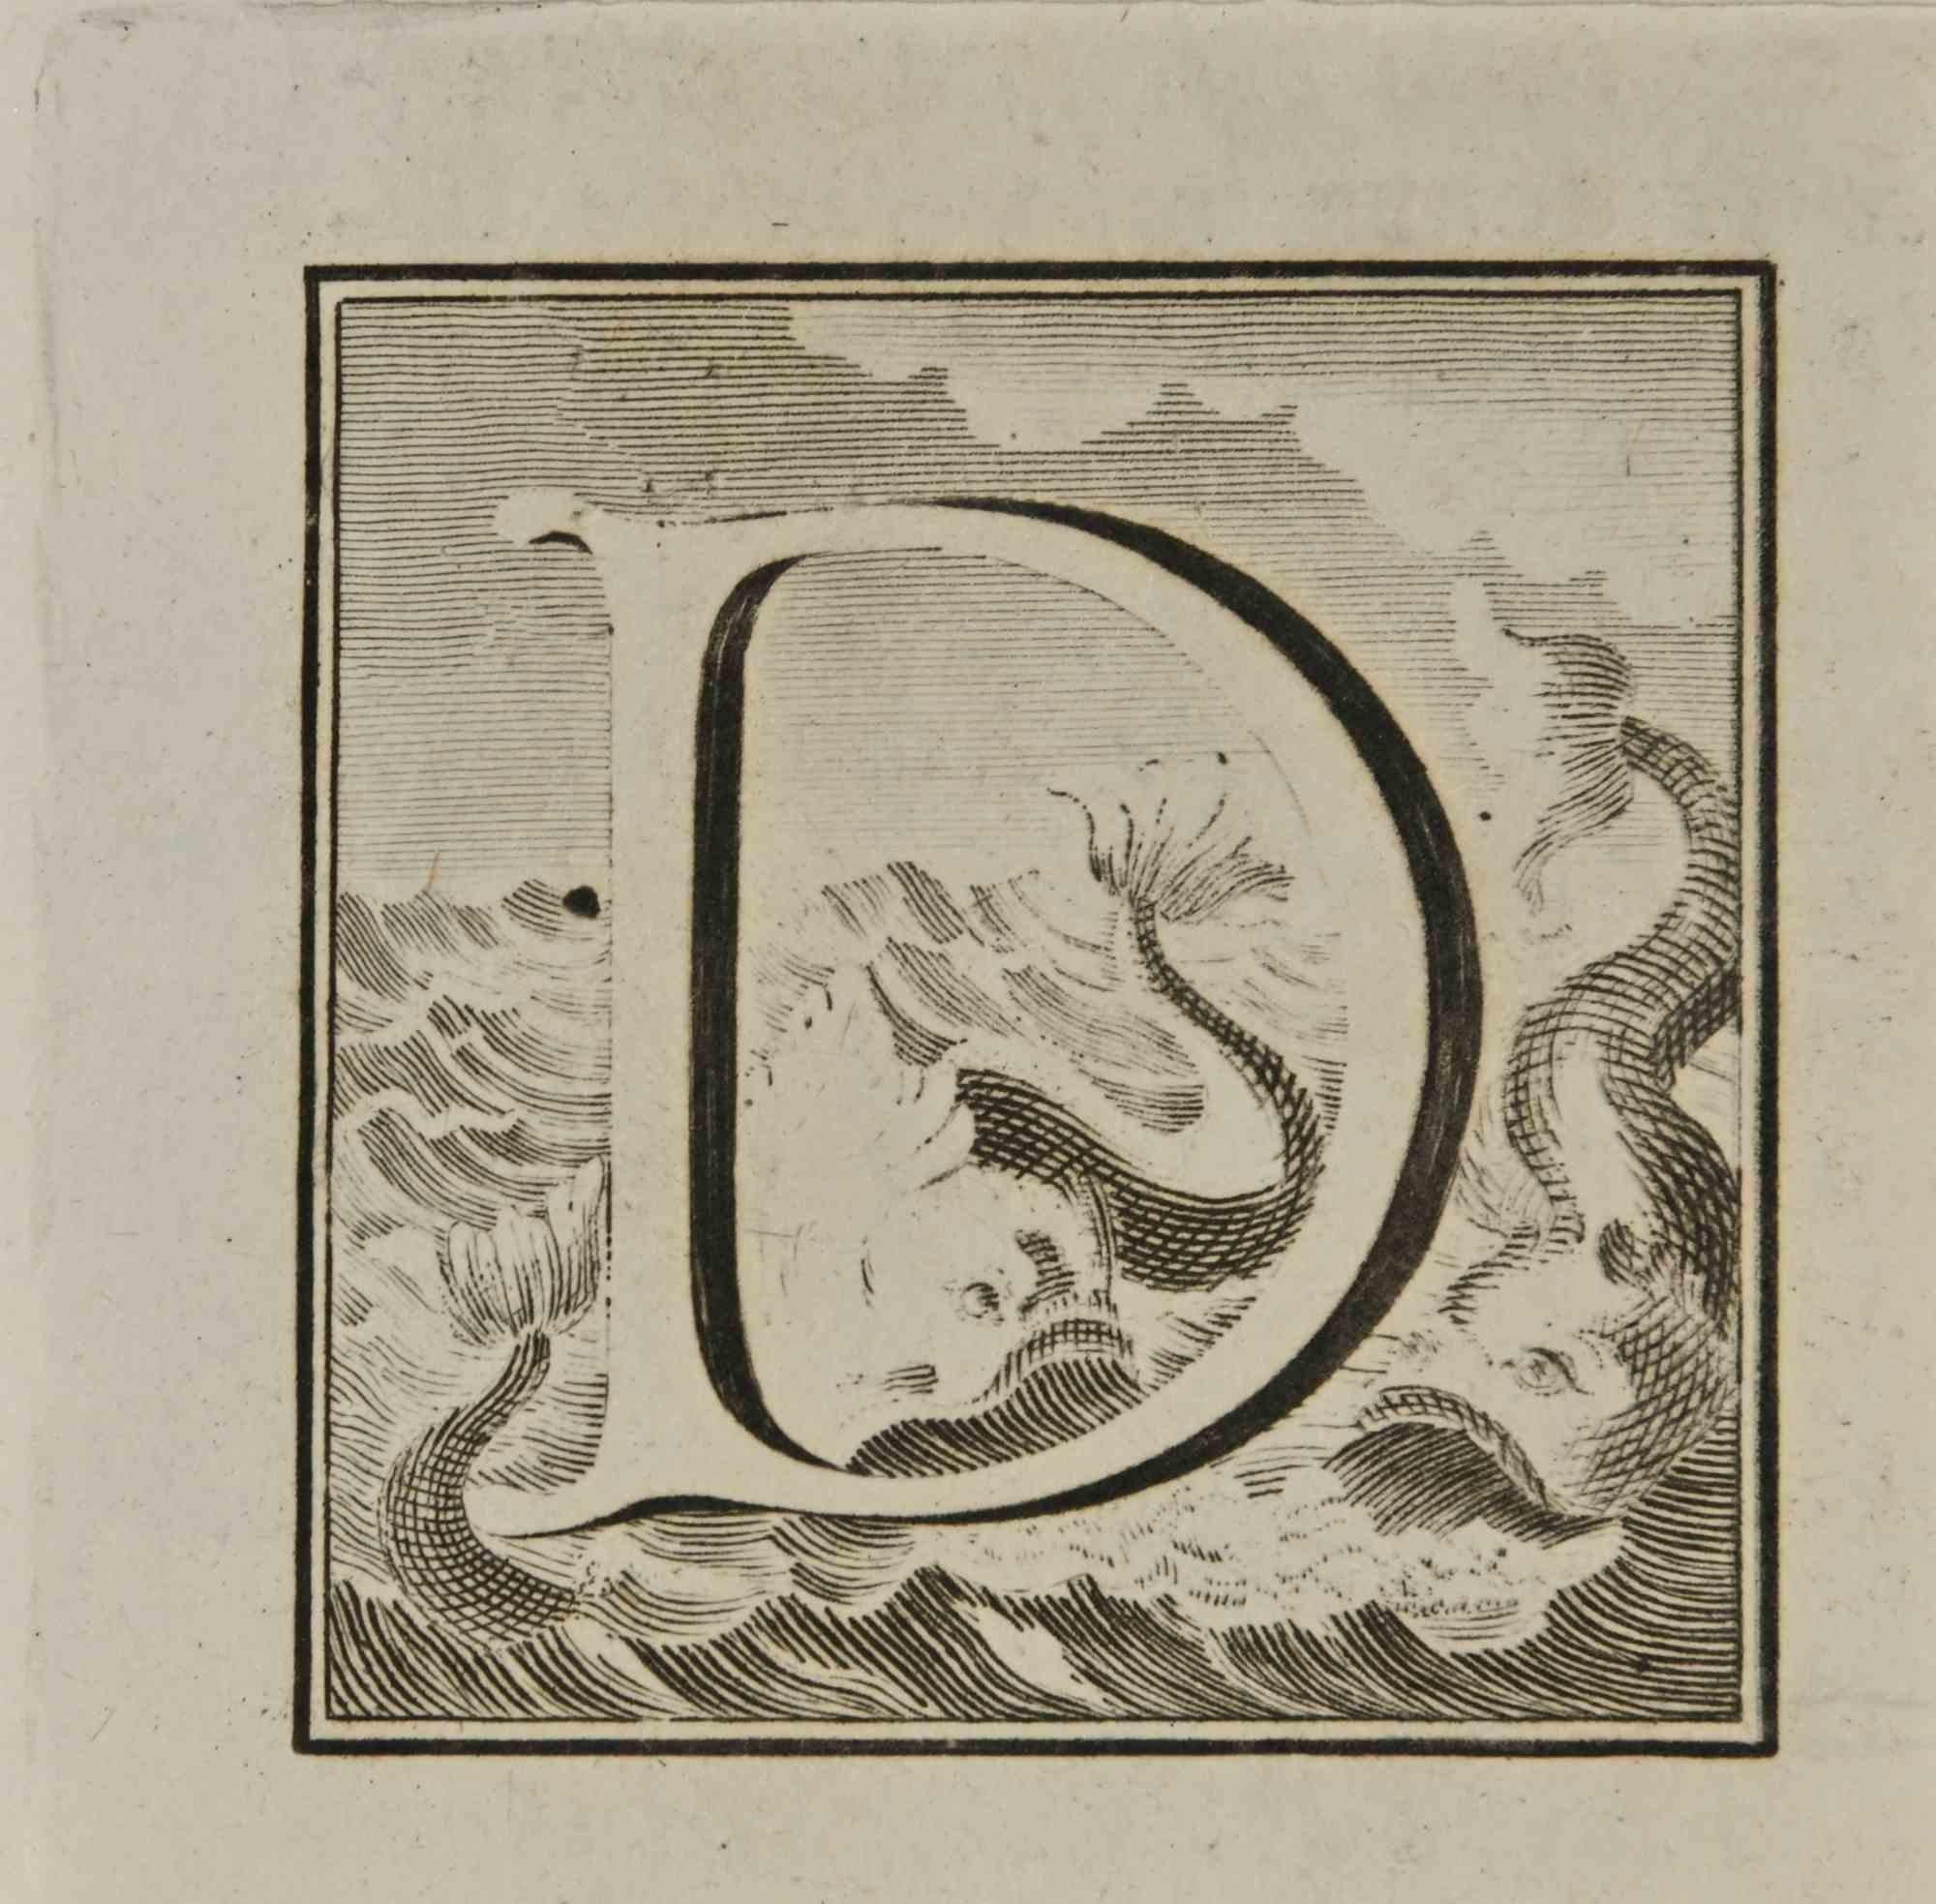 Lettre de l'alphabet D,  de la série "Antiquités d'Herculanum", est une gravure sur papier réalisée par Luigi Vanvitelli au 18ème siècle.

Bonnes conditions.

La gravure appartient à la suite d'estampes "Antiquités d'Herculanum exposées" (titre